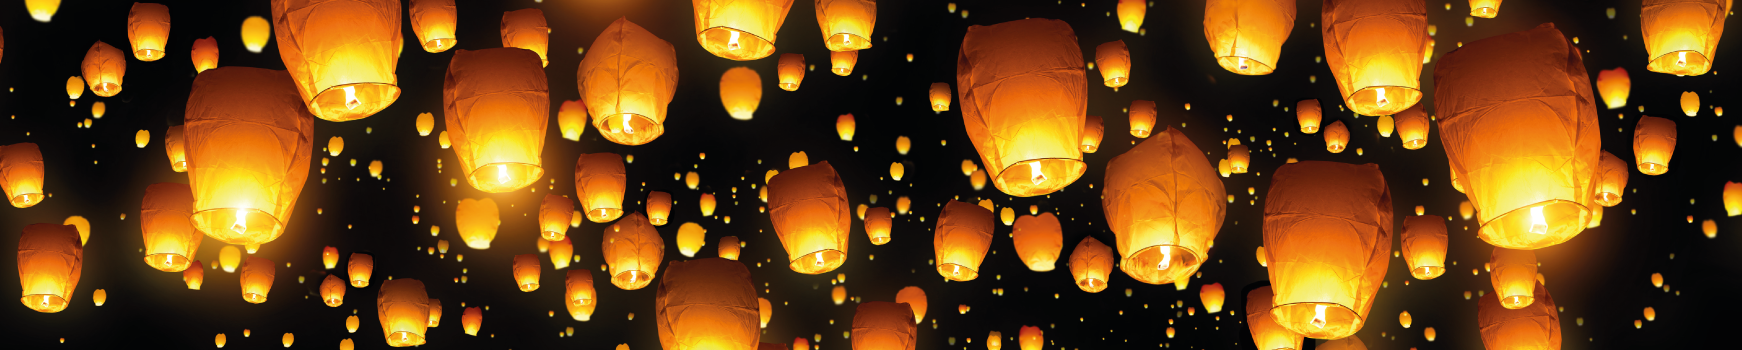 30 Stk Mix Glückslaterne Himmelslaterne Skyballon Chinesische Laterne Farbmix 